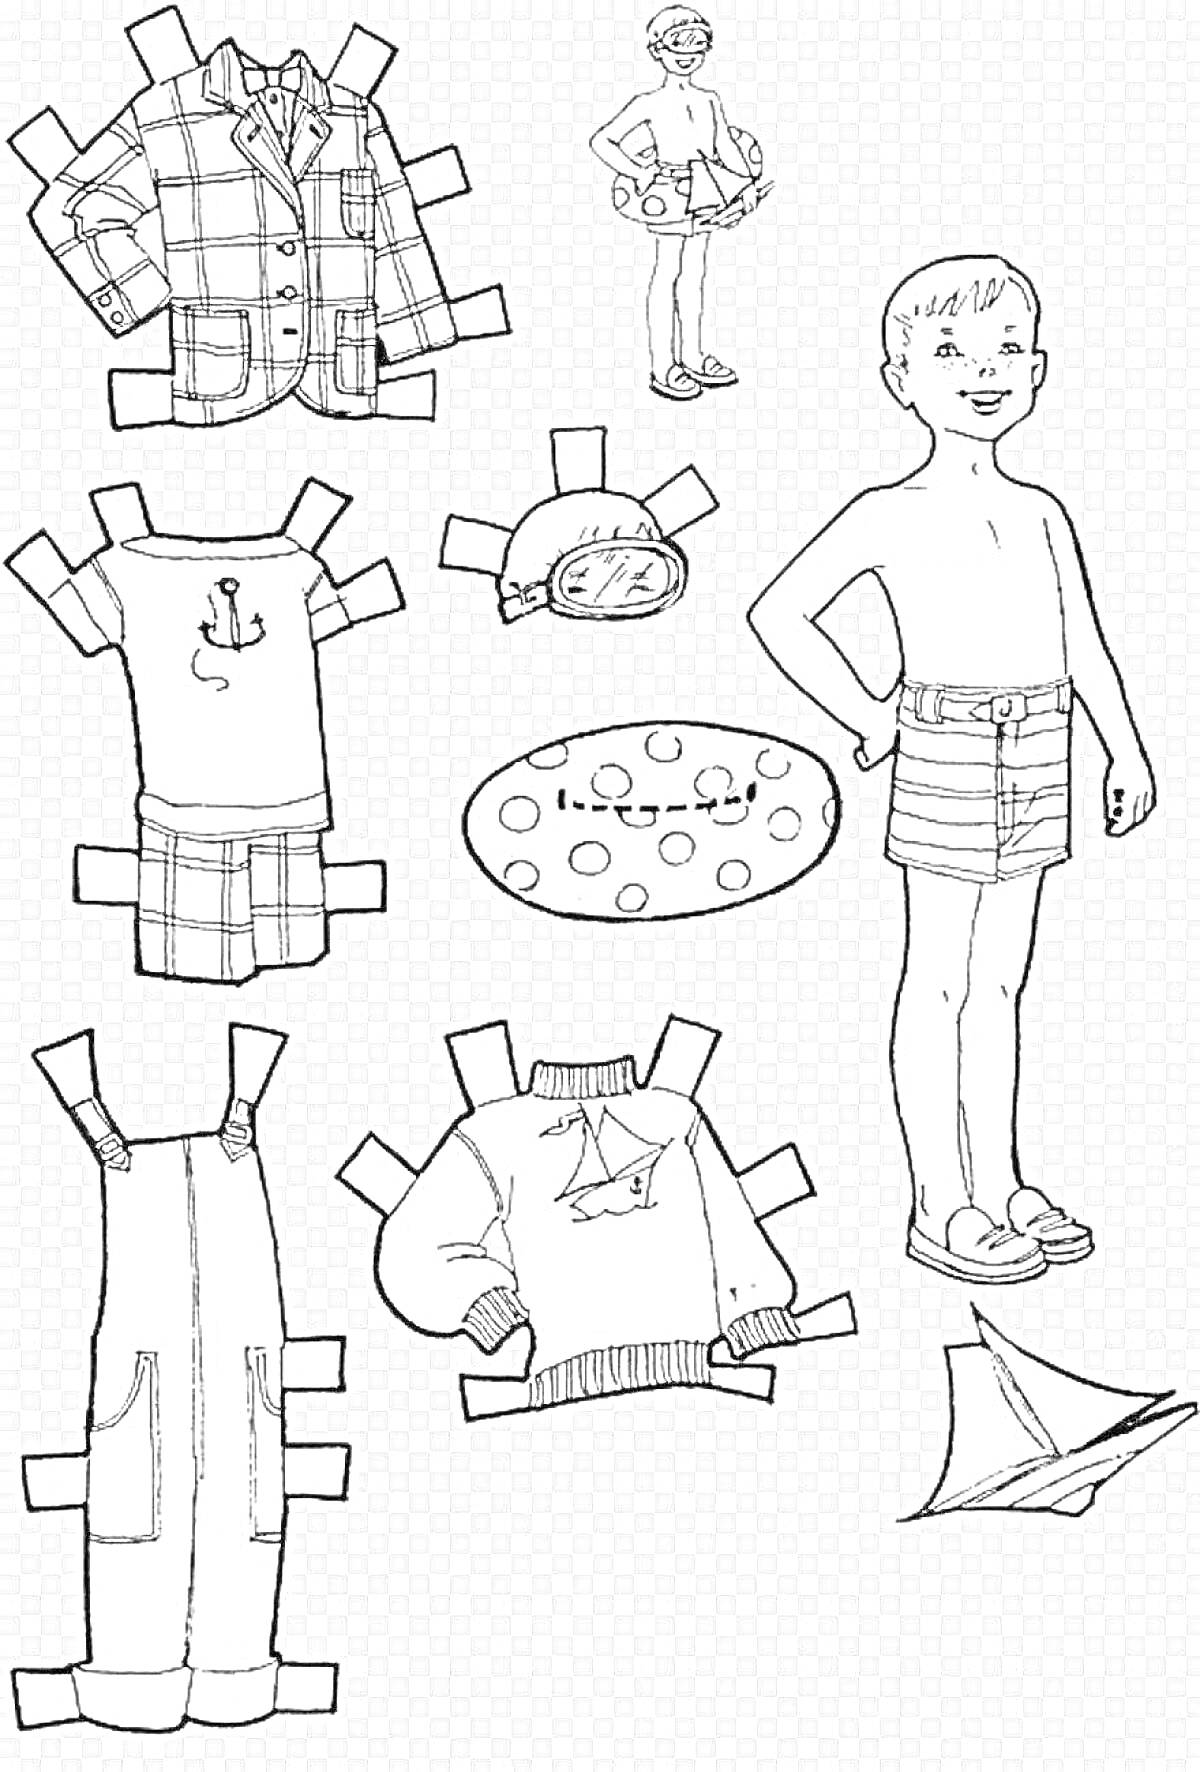 Раскраска Вырезалка для мальчиков с одеждой и аксессуарами (мальчик, пиджак, красный галстук, полосатые часы, свитер, футболка, рубашка, брюки, кроссовки, шапка, воздушный змей, балансир)